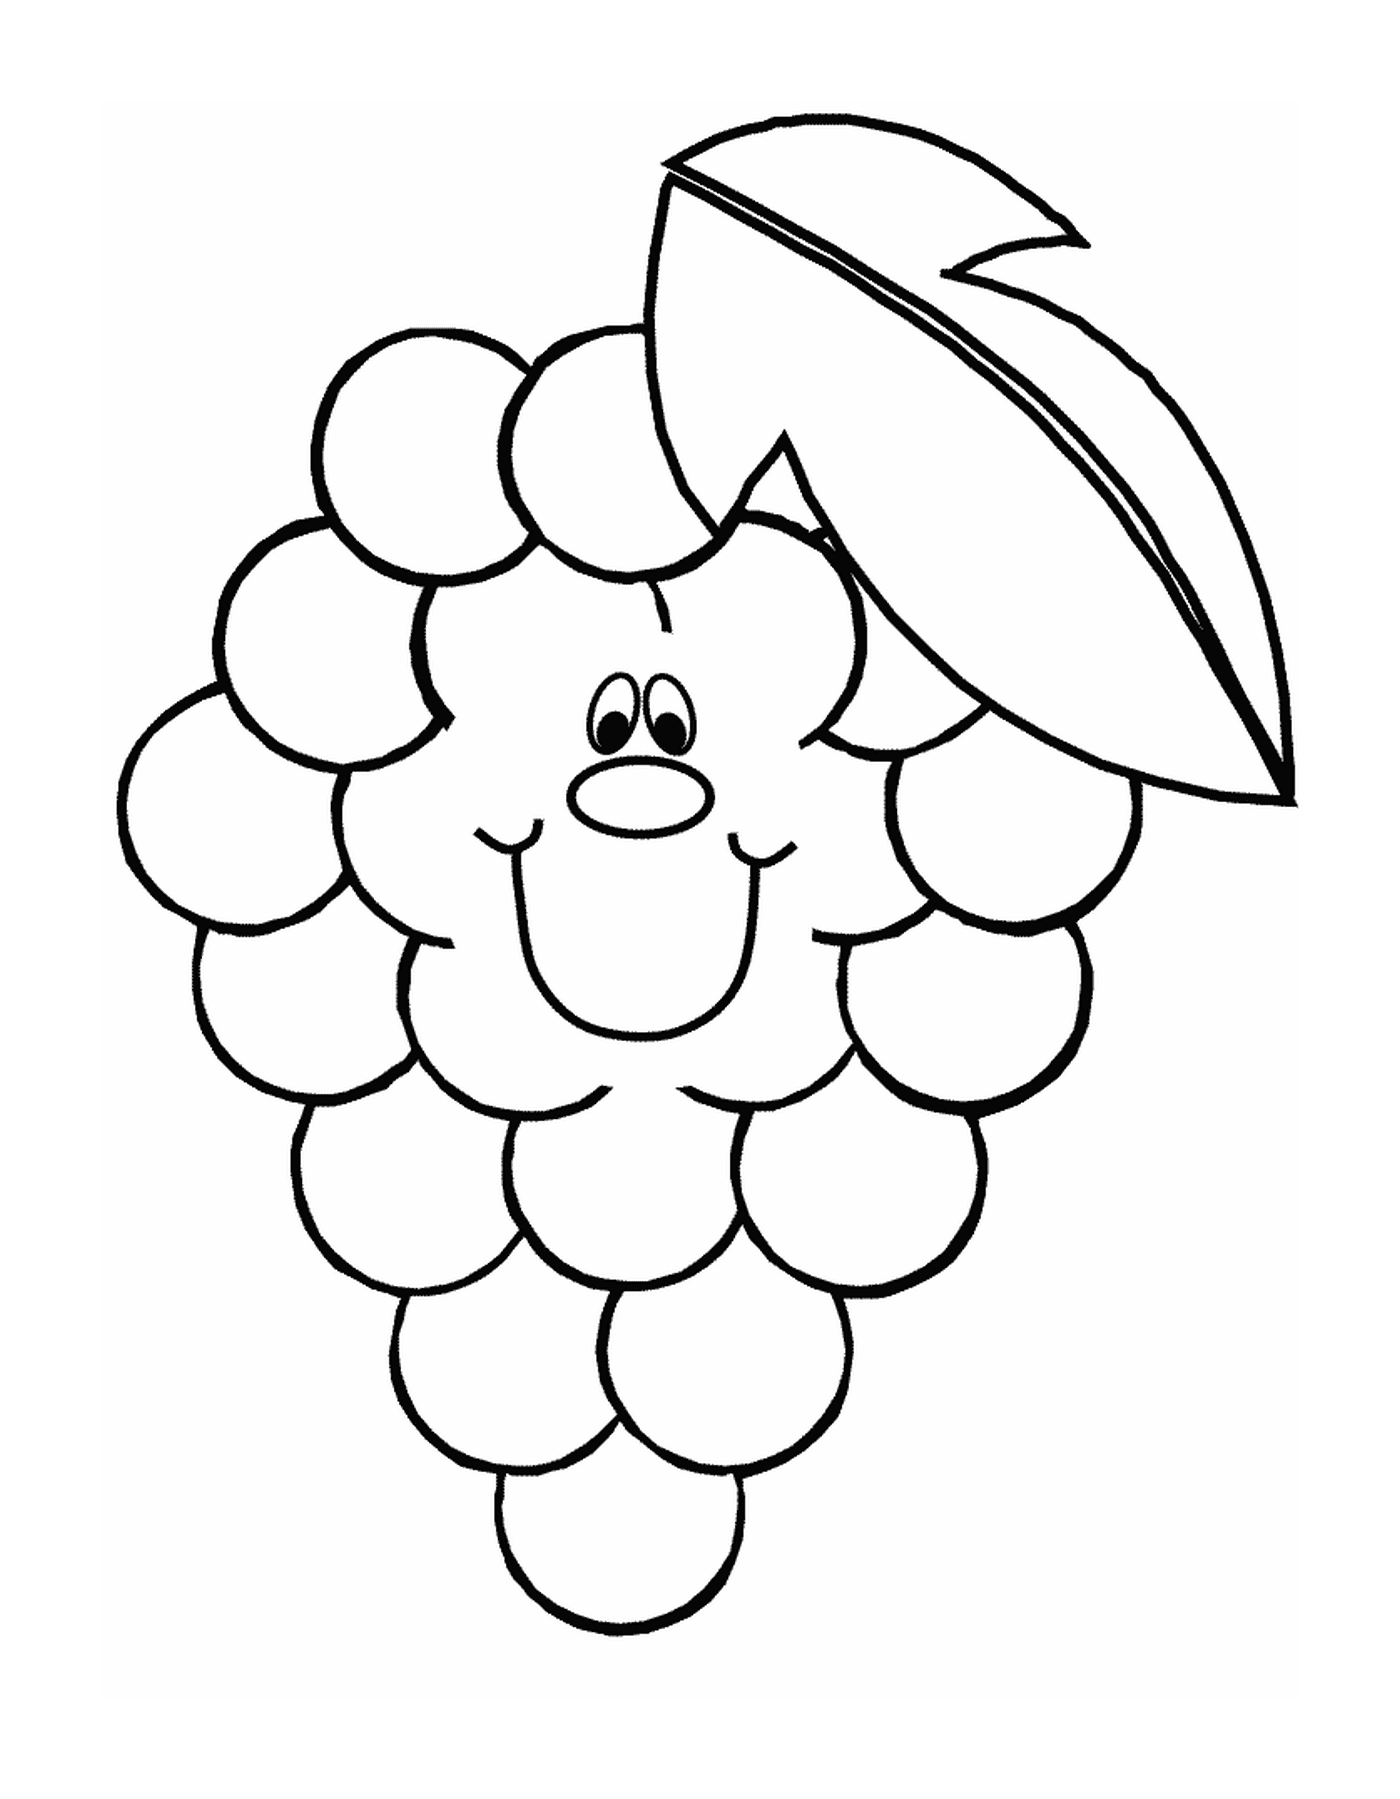  grappolo di uve succulente 